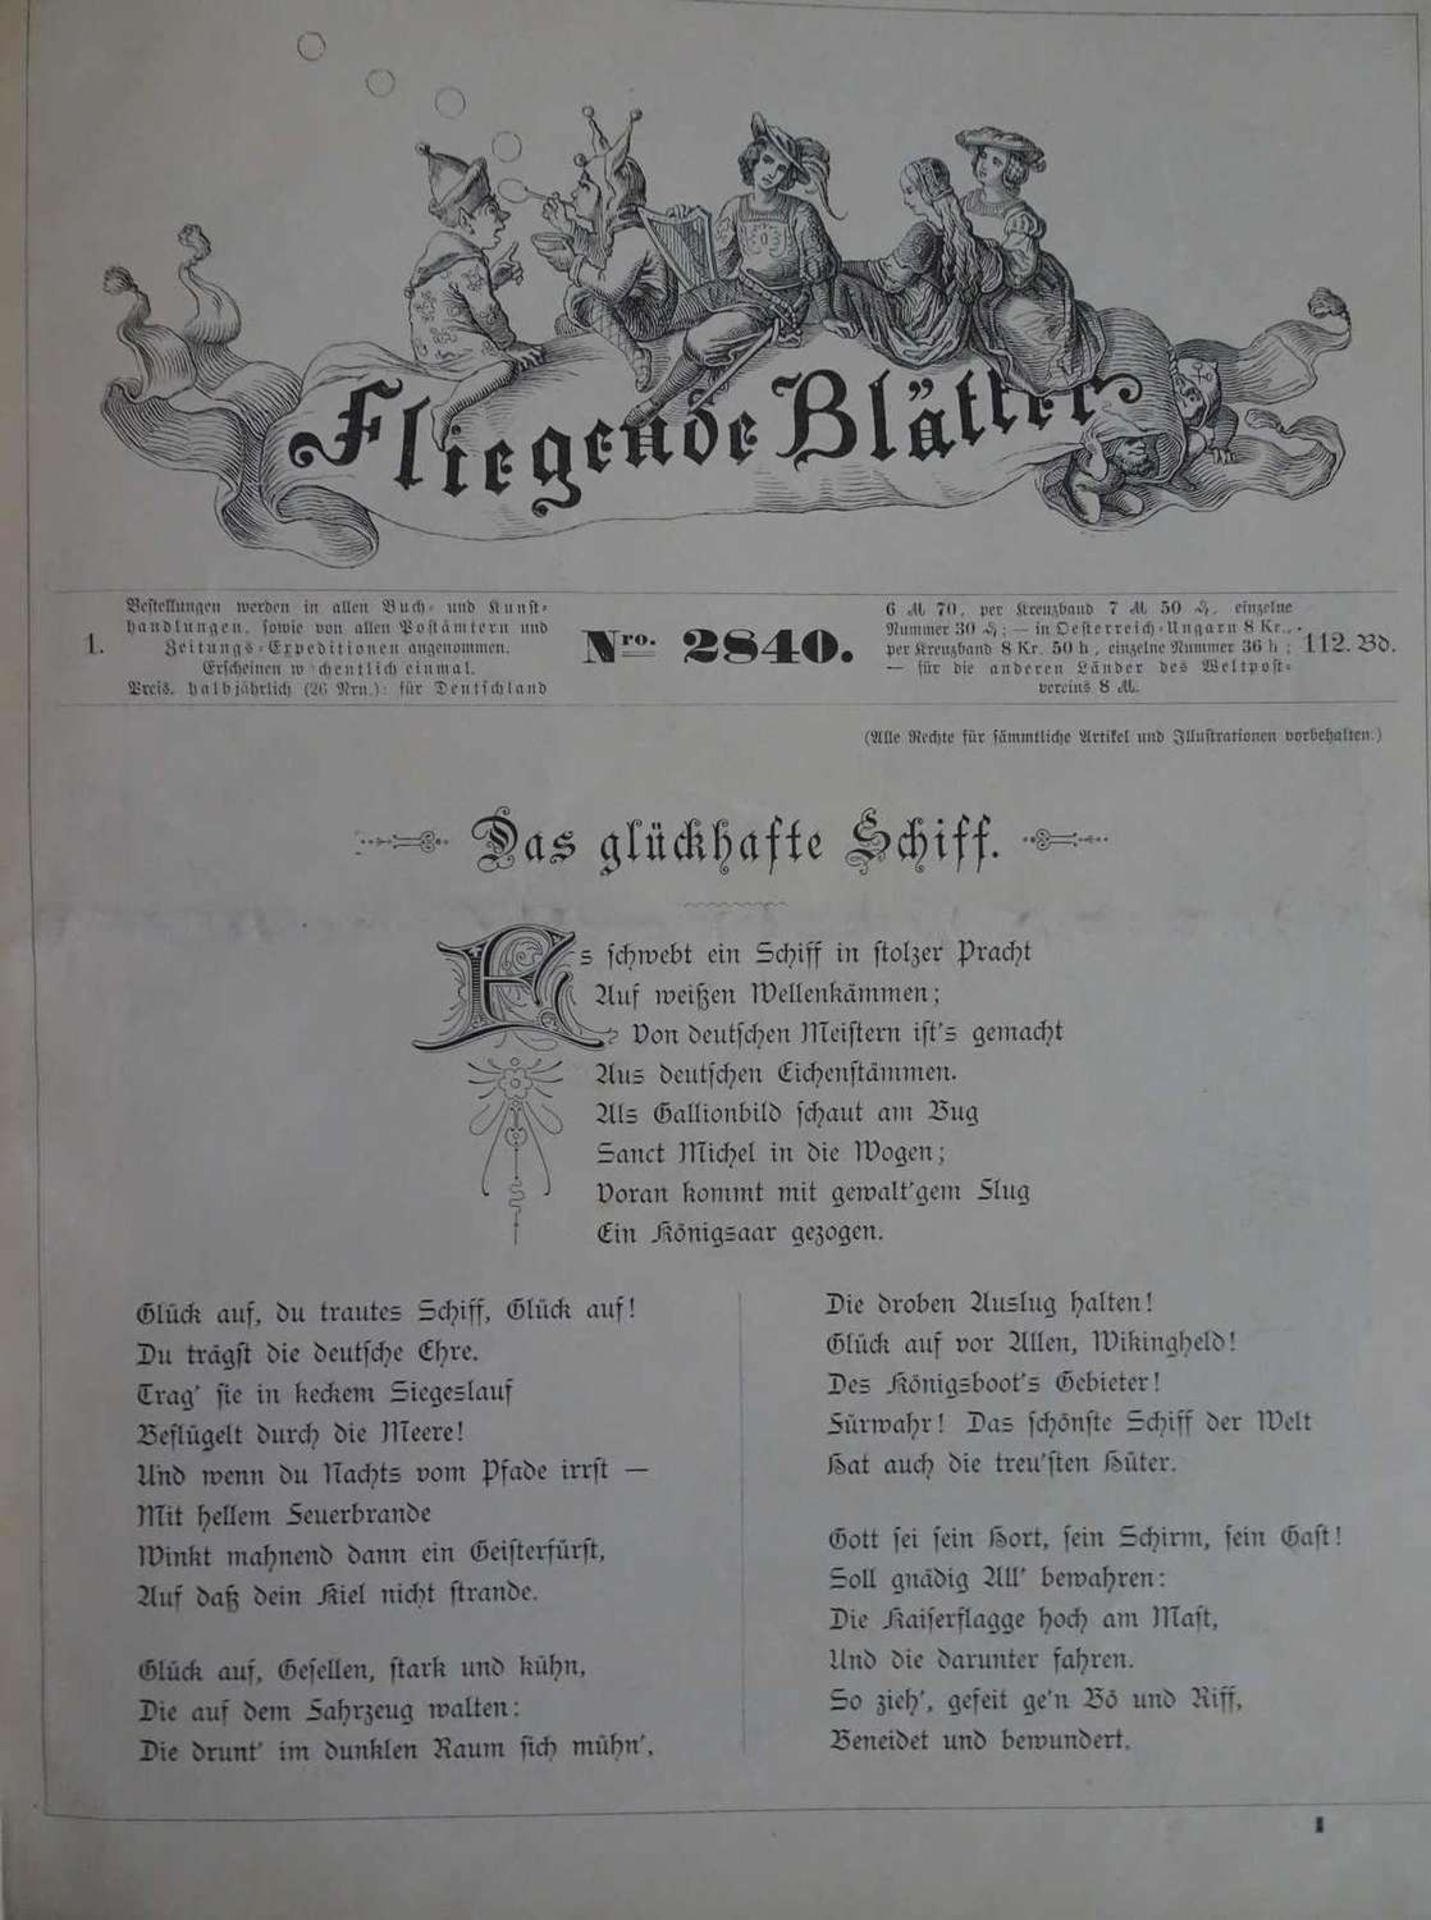 Fliegende Blätter, insgesamt 5 gebundene Bücher. Dabei 1892, 1894, 1896, 1897, sowie Band 112-13. - Image 2 of 2